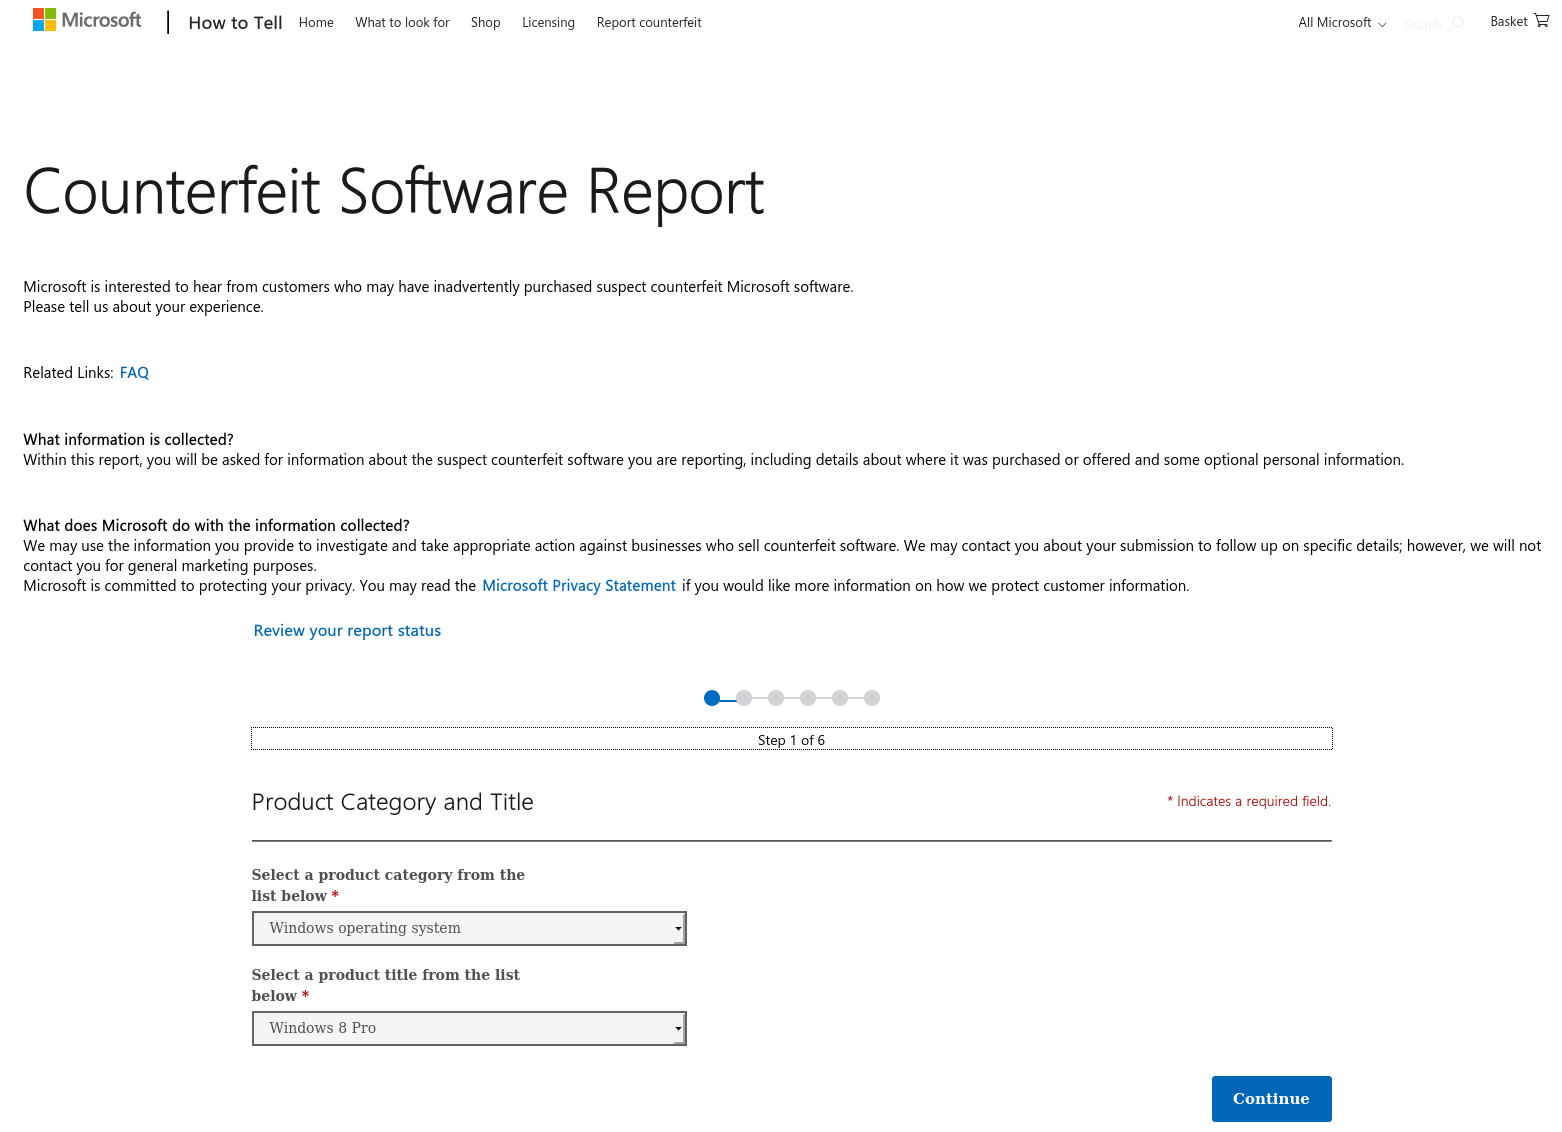 Formulario de informe de software falsificado de Microsoft